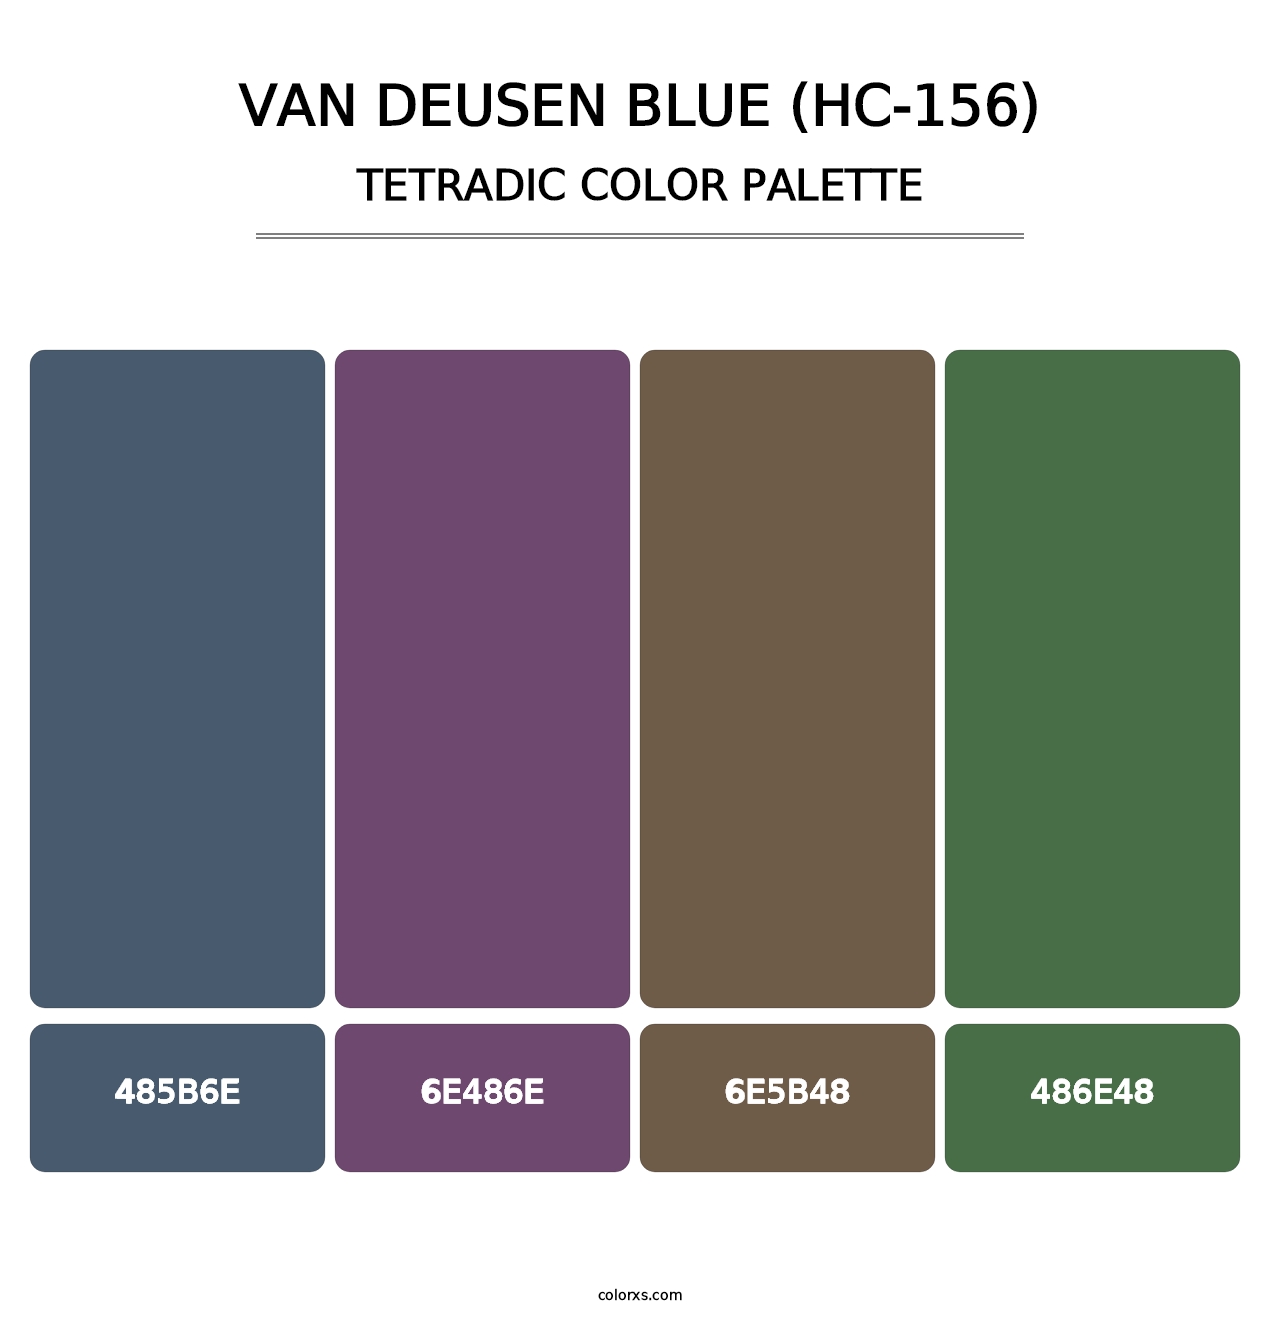 Van Deusen Blue (HC-156) - Tetradic Color Palette